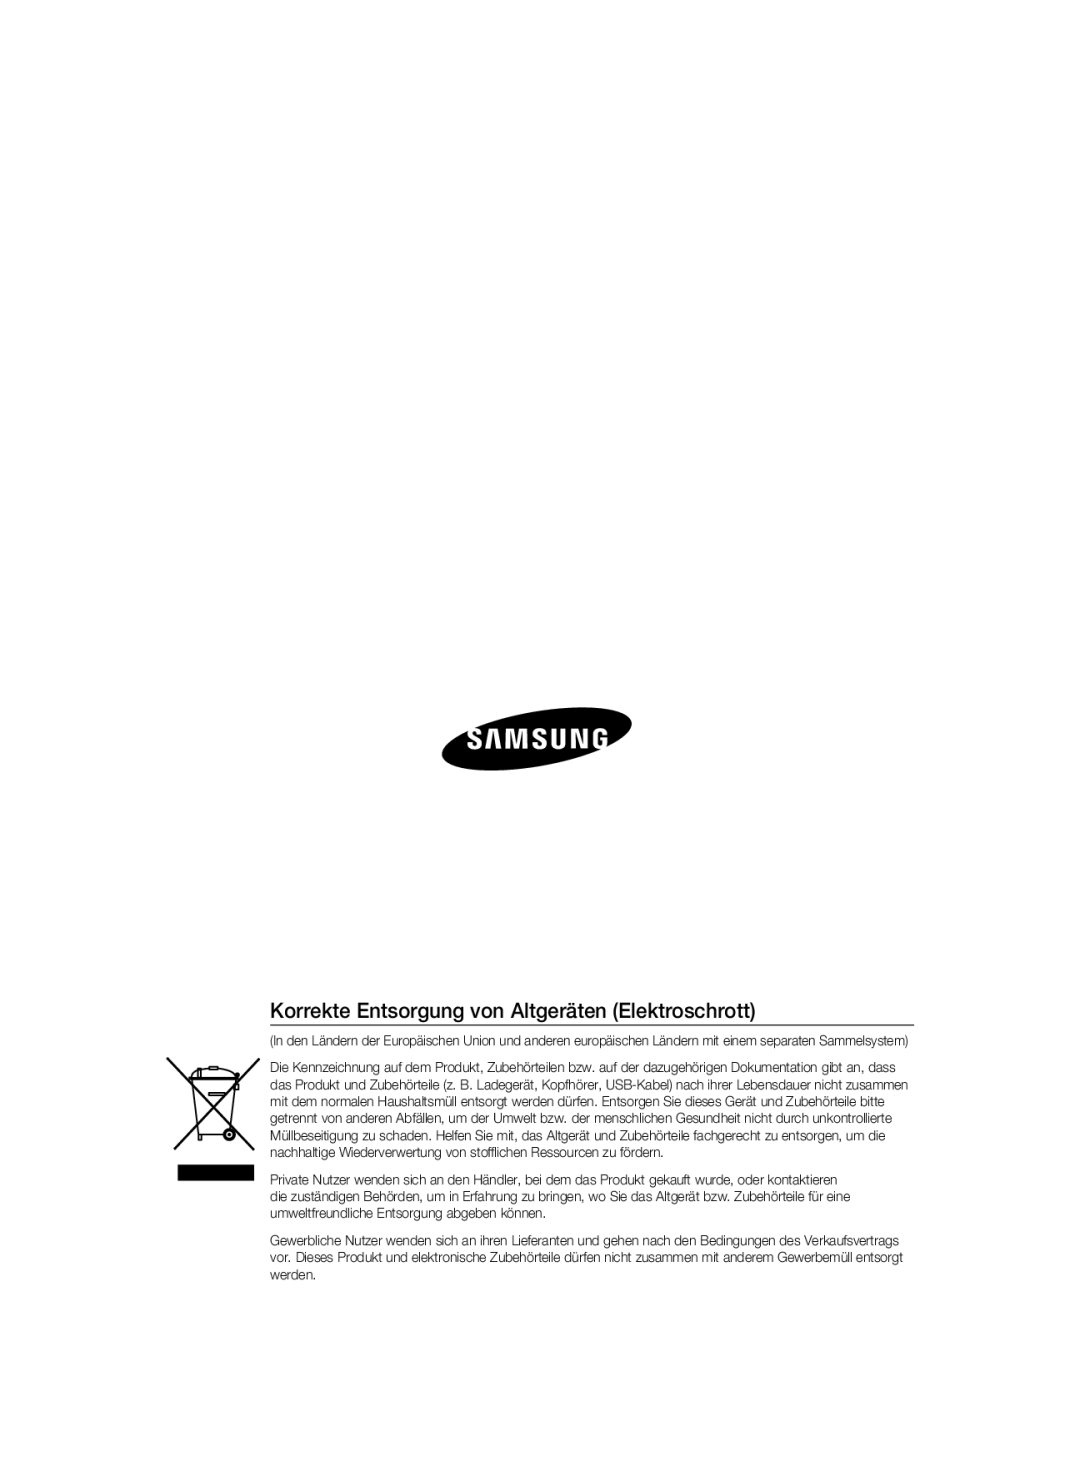 Samsung SCC-B2337P, SCC-B2037P manual Korrekte Entsorgung von Altgeräten Elektroschrott 